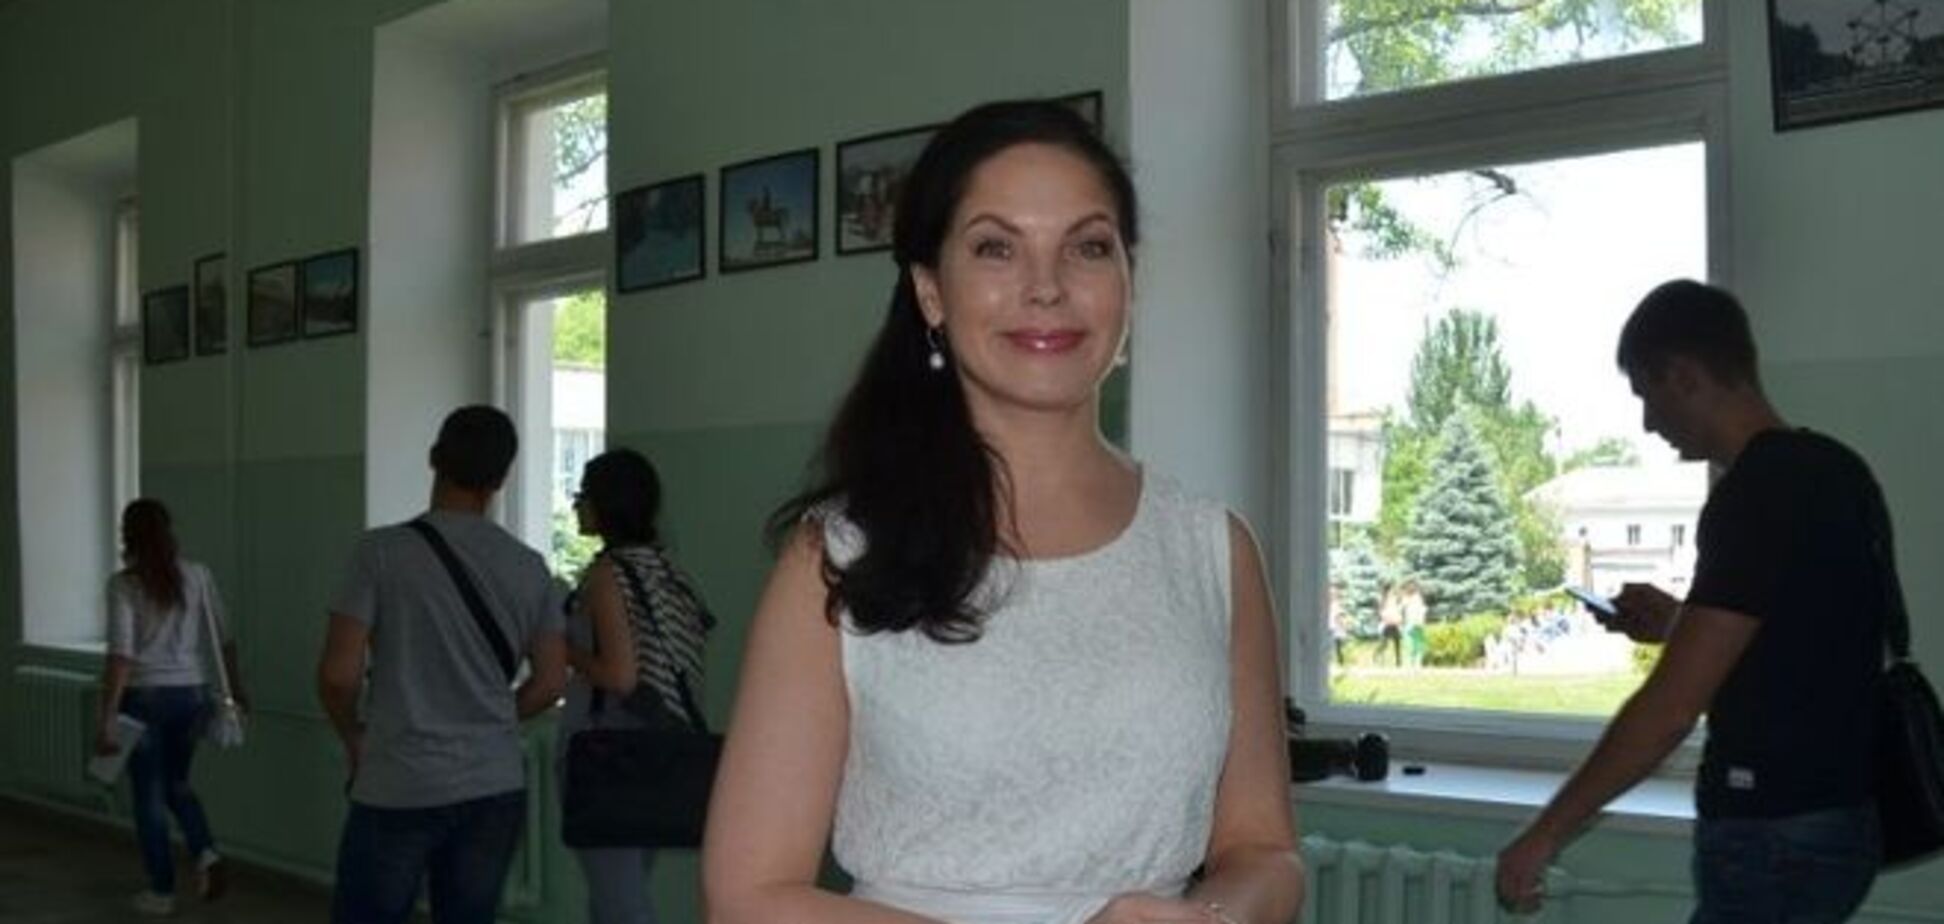 Будущий министр культуры! Звезда 'Playboy' стала кандидатом наук в Николаеве: опубликованы фото и видео